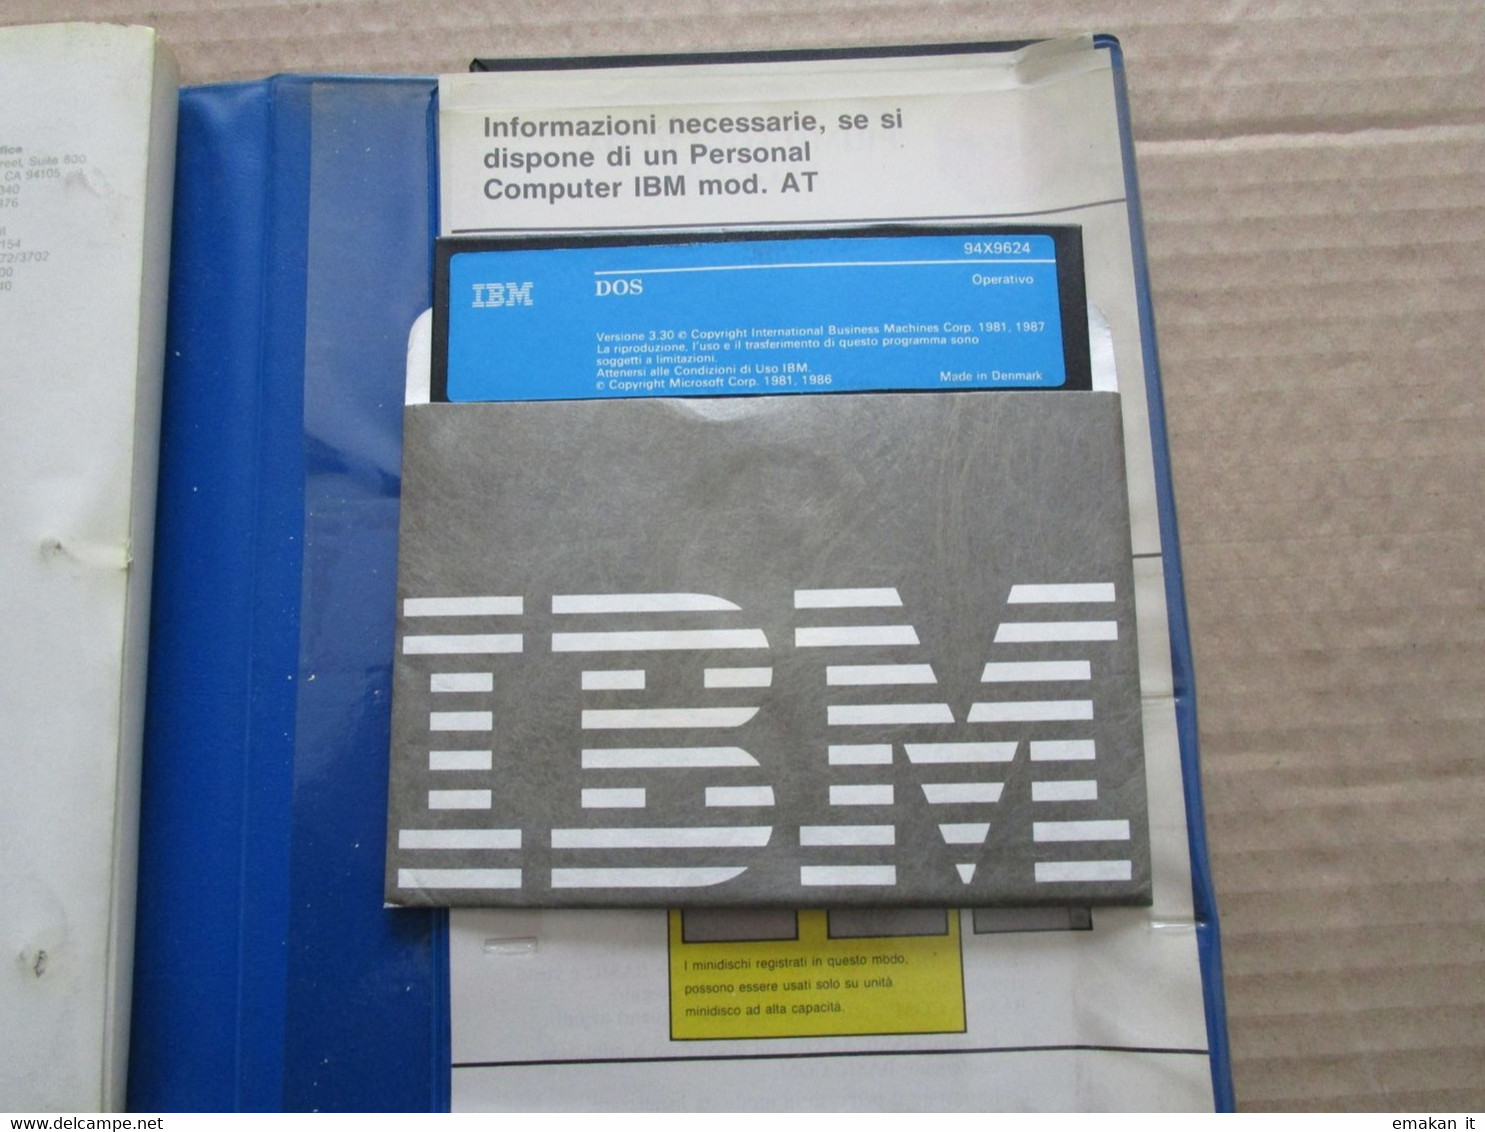 # MANUALE IBM DOS 3.30 - Informática